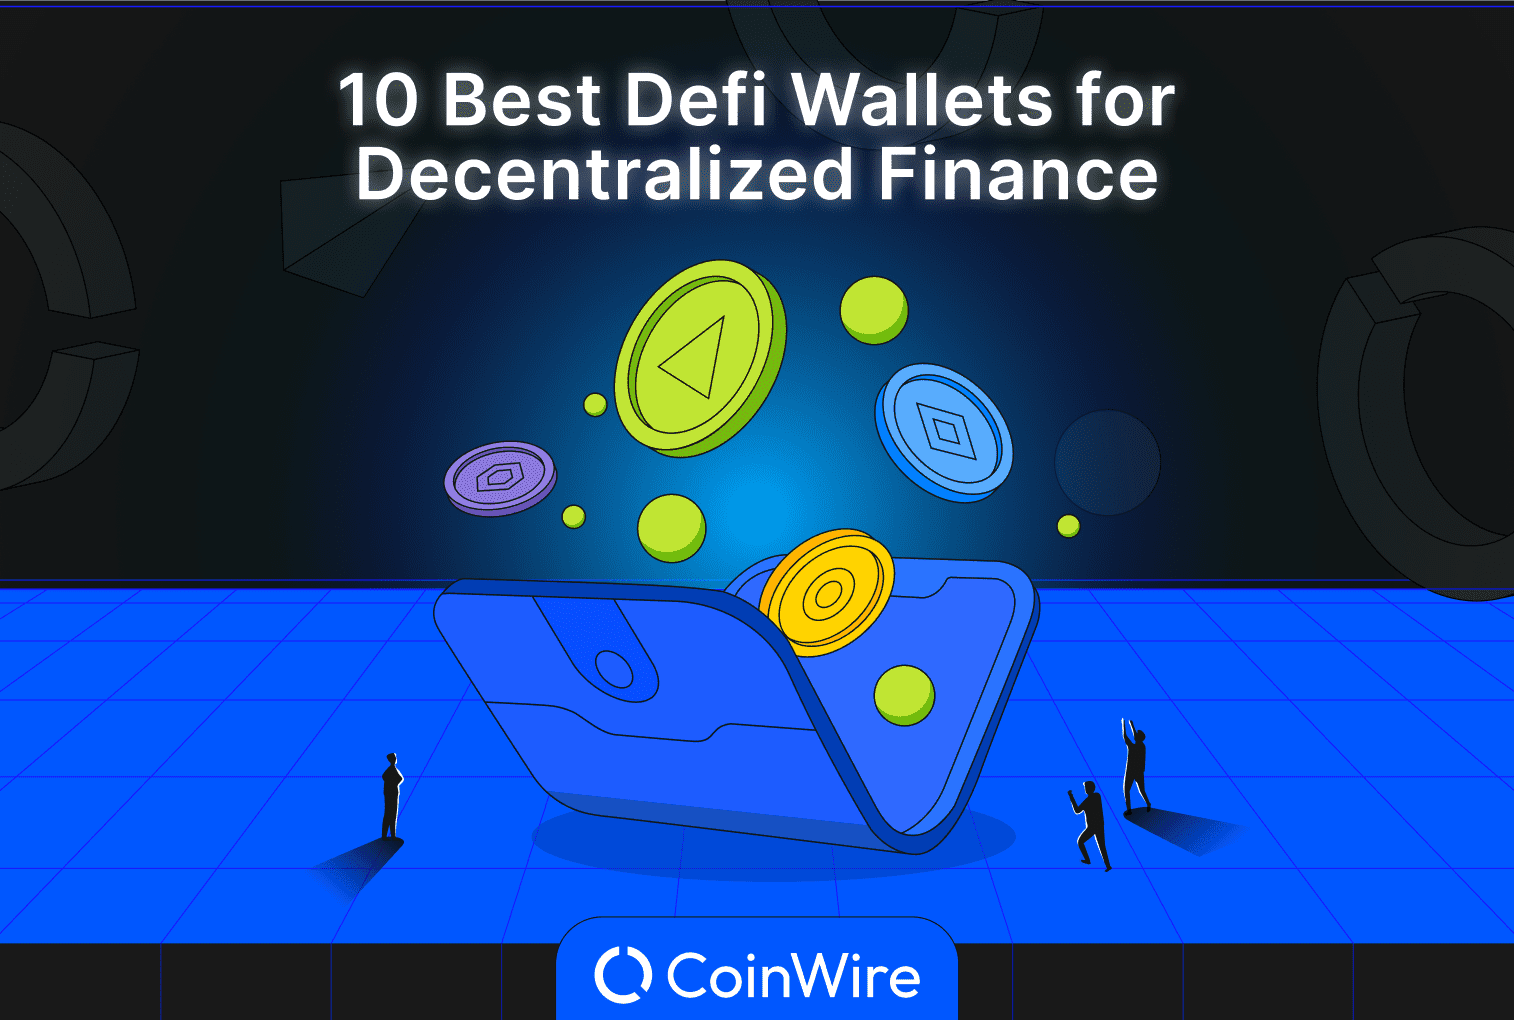 Top 10 Defi Wallets